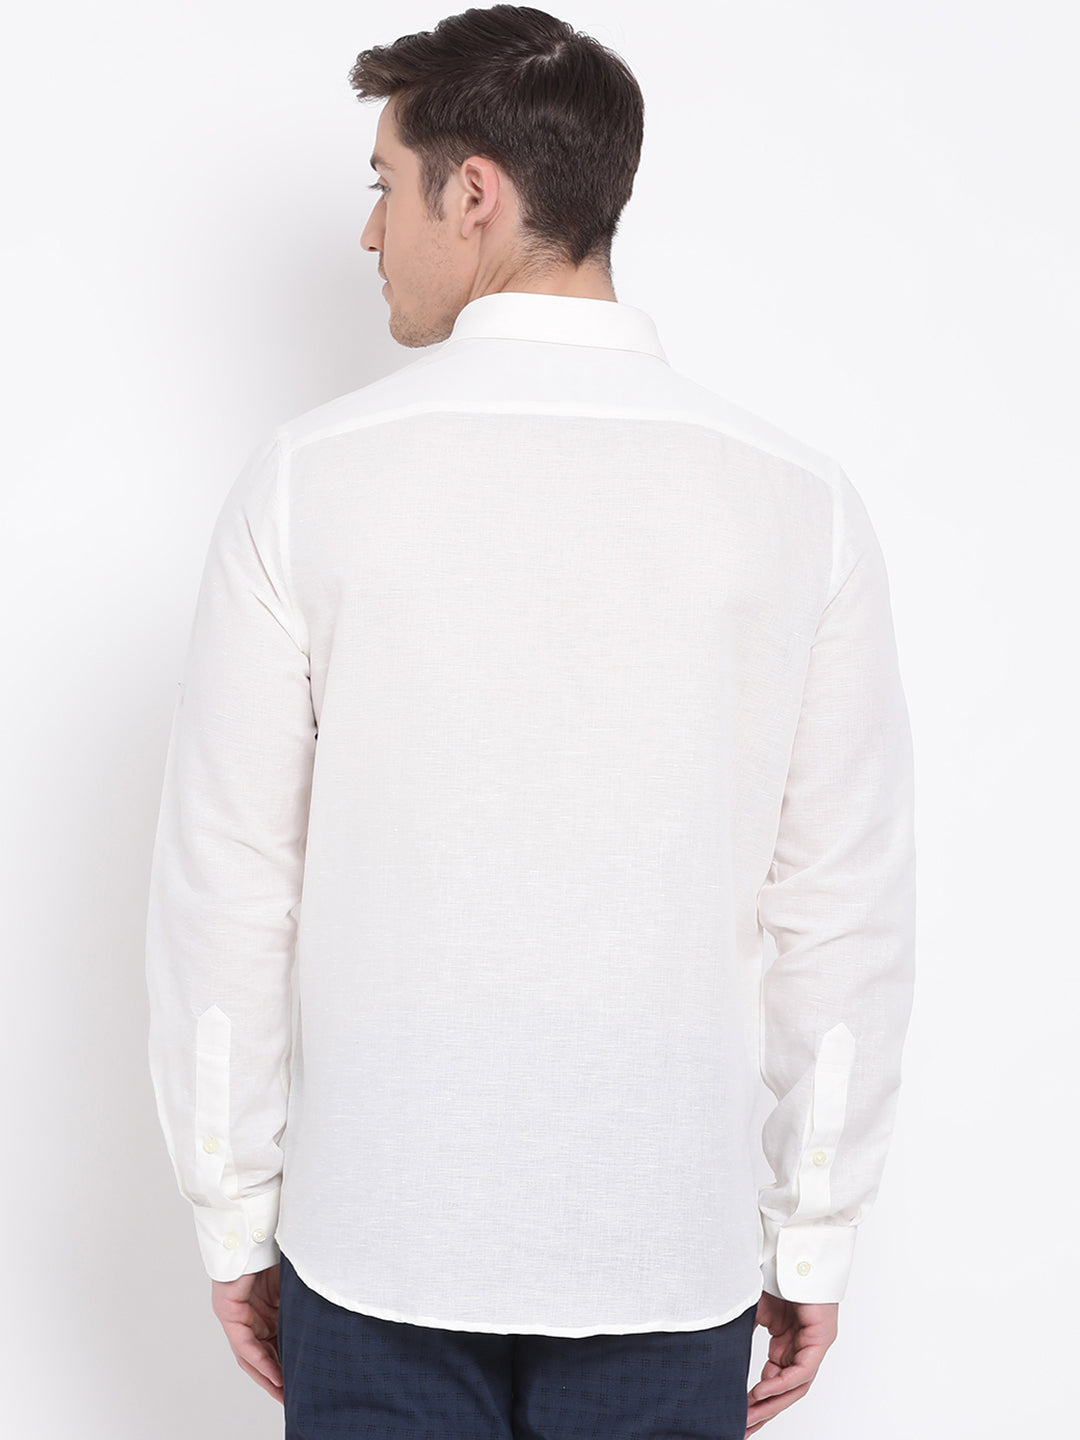 Cotton Linen Off White Plain Slim Fit Full Sleeve Formal Shirt